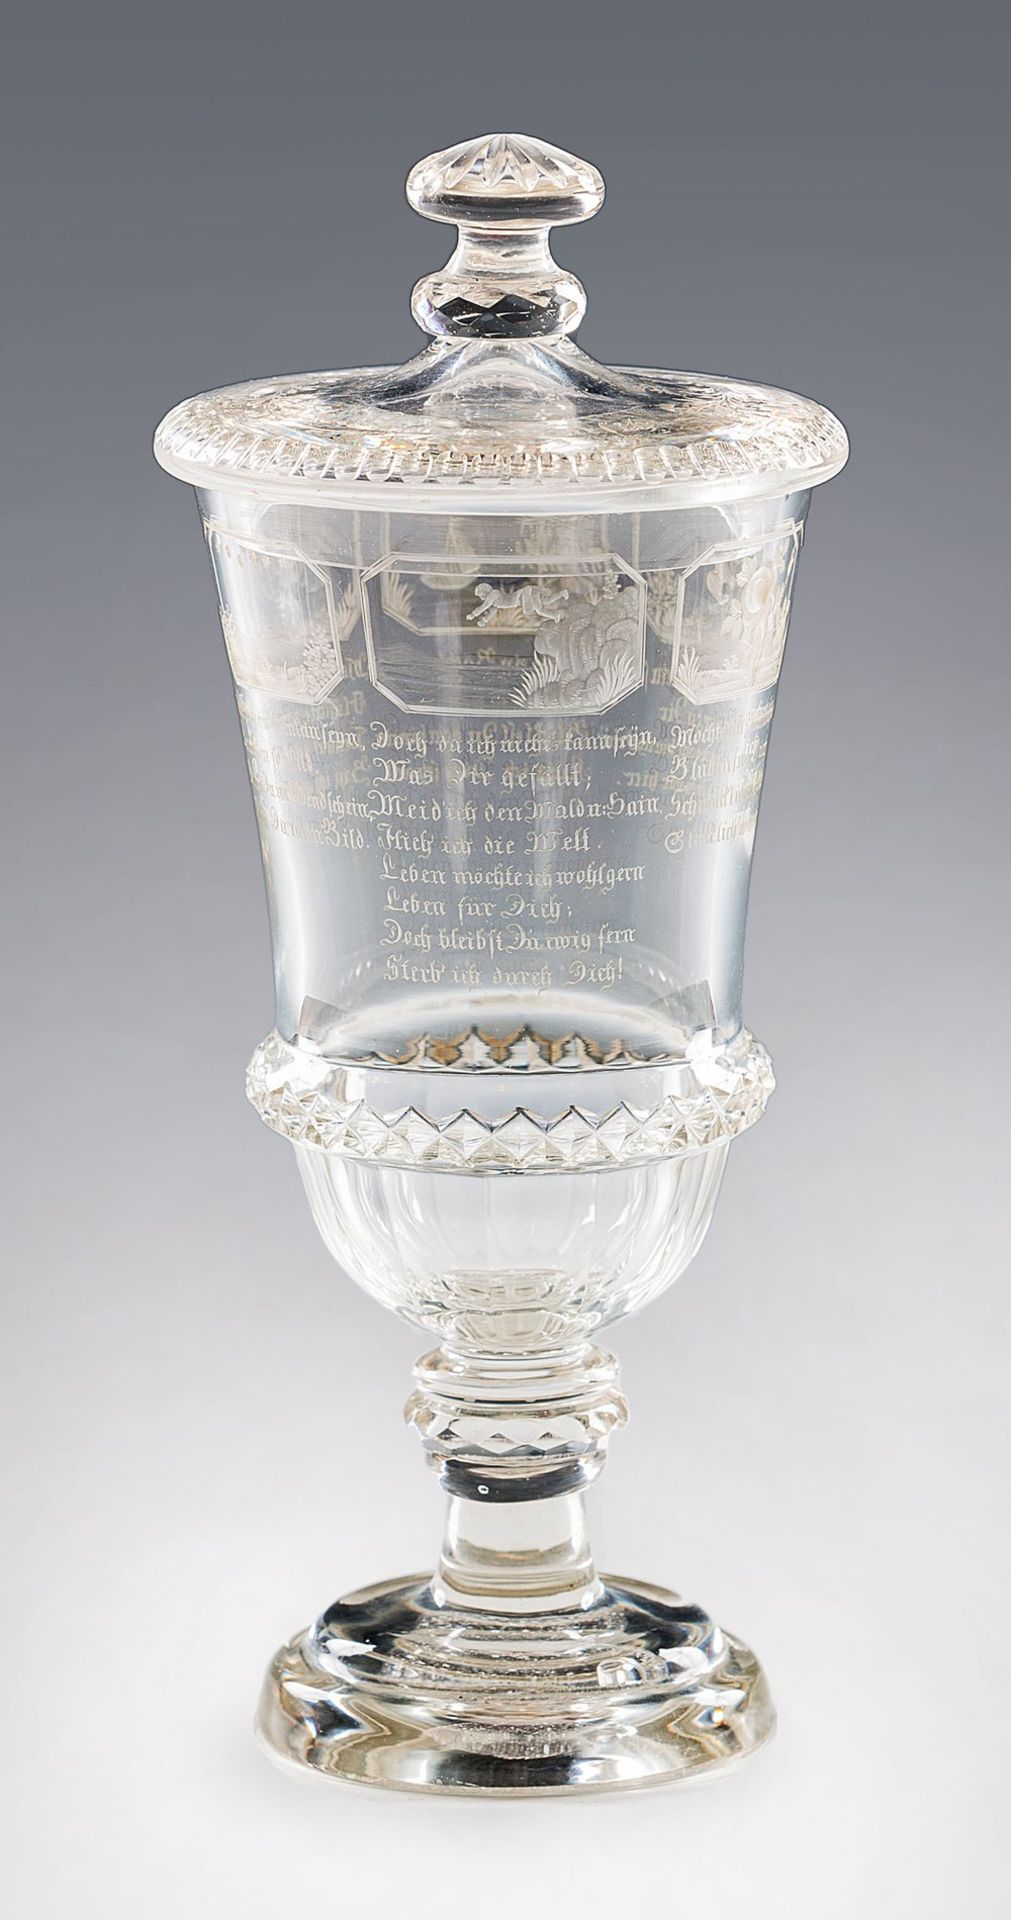 Liebeswunsch-Pokal Nordböhmen, um 1845